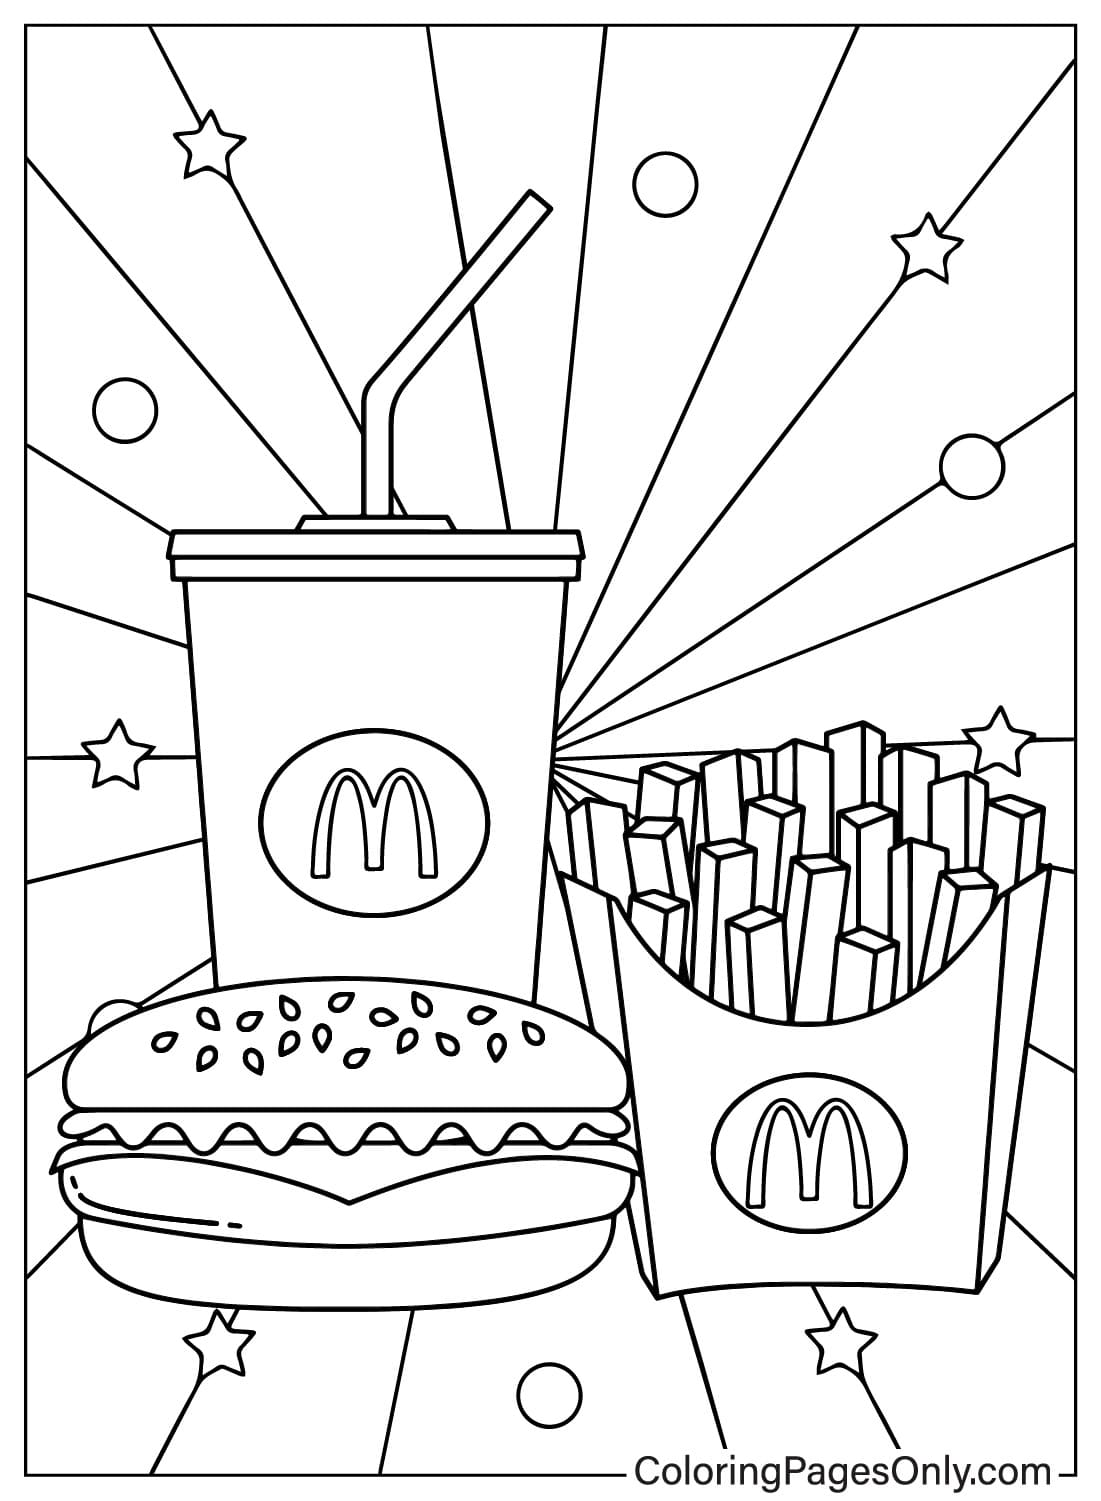 Página para colorir de imagens do McDonalds do McDonald's